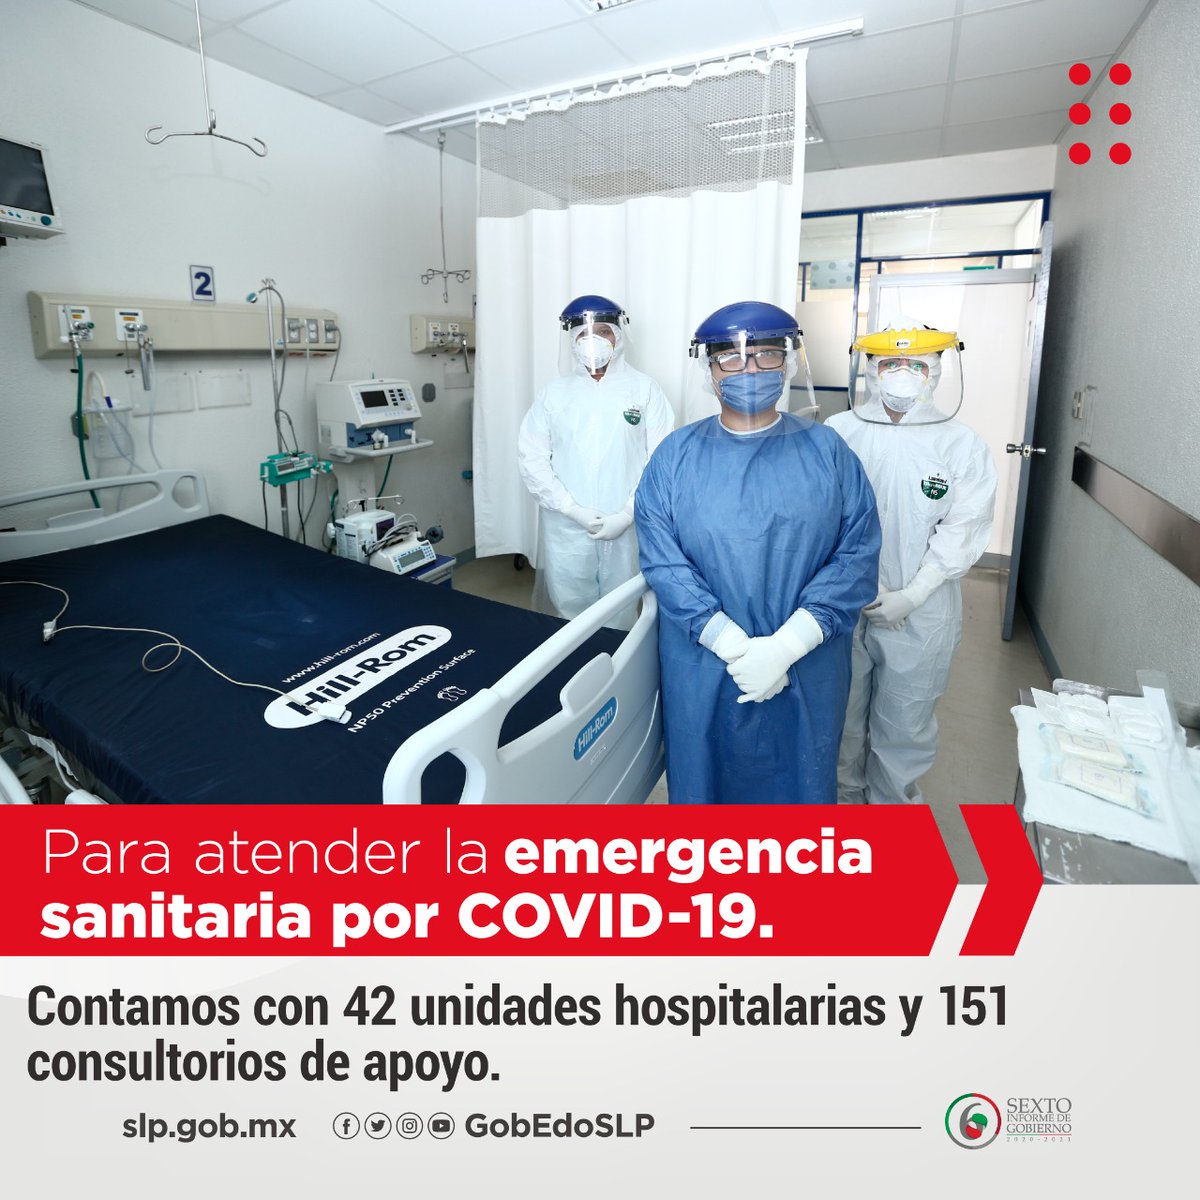 Para atender la emergencia sanitaria por #COVID19, San Luis Potosí cuenta con 206 unidades de salud.
#InformeJMCarreras